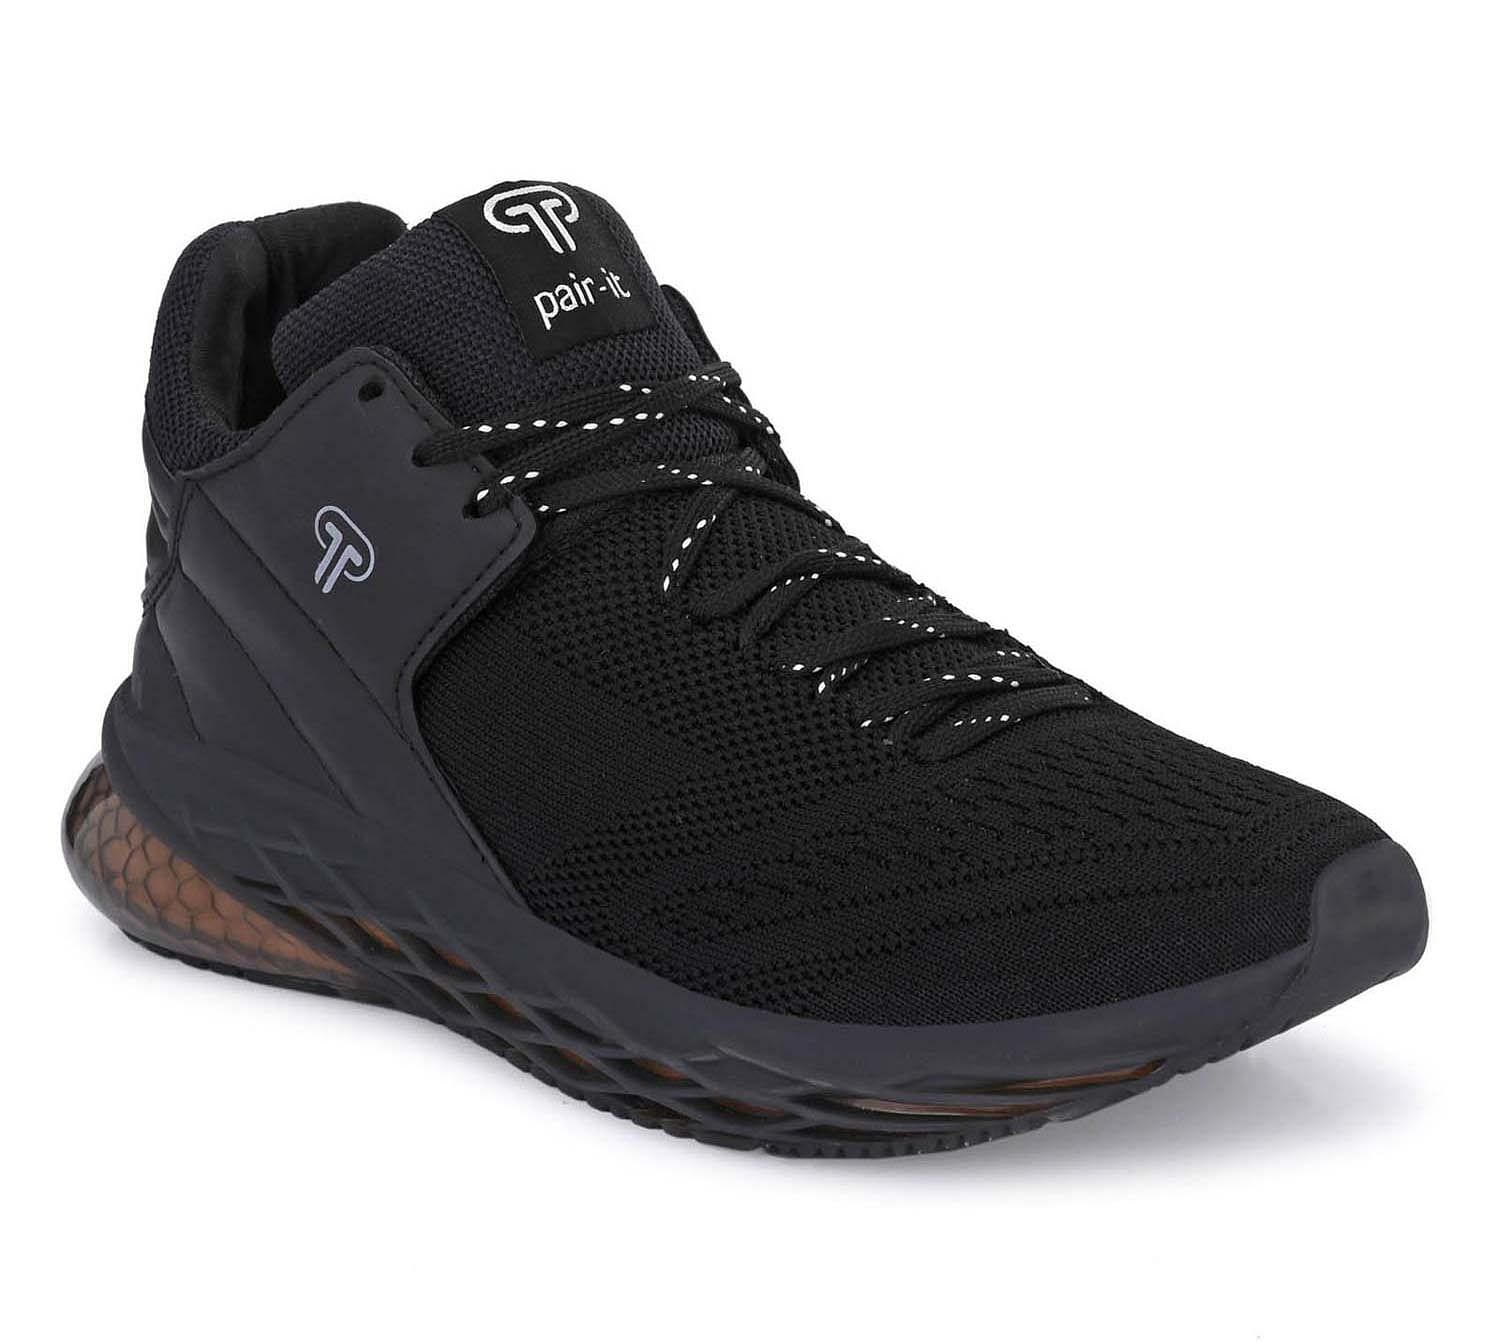 Pair-it Men's Sports Shoes - Black - LZ-SPORTS024